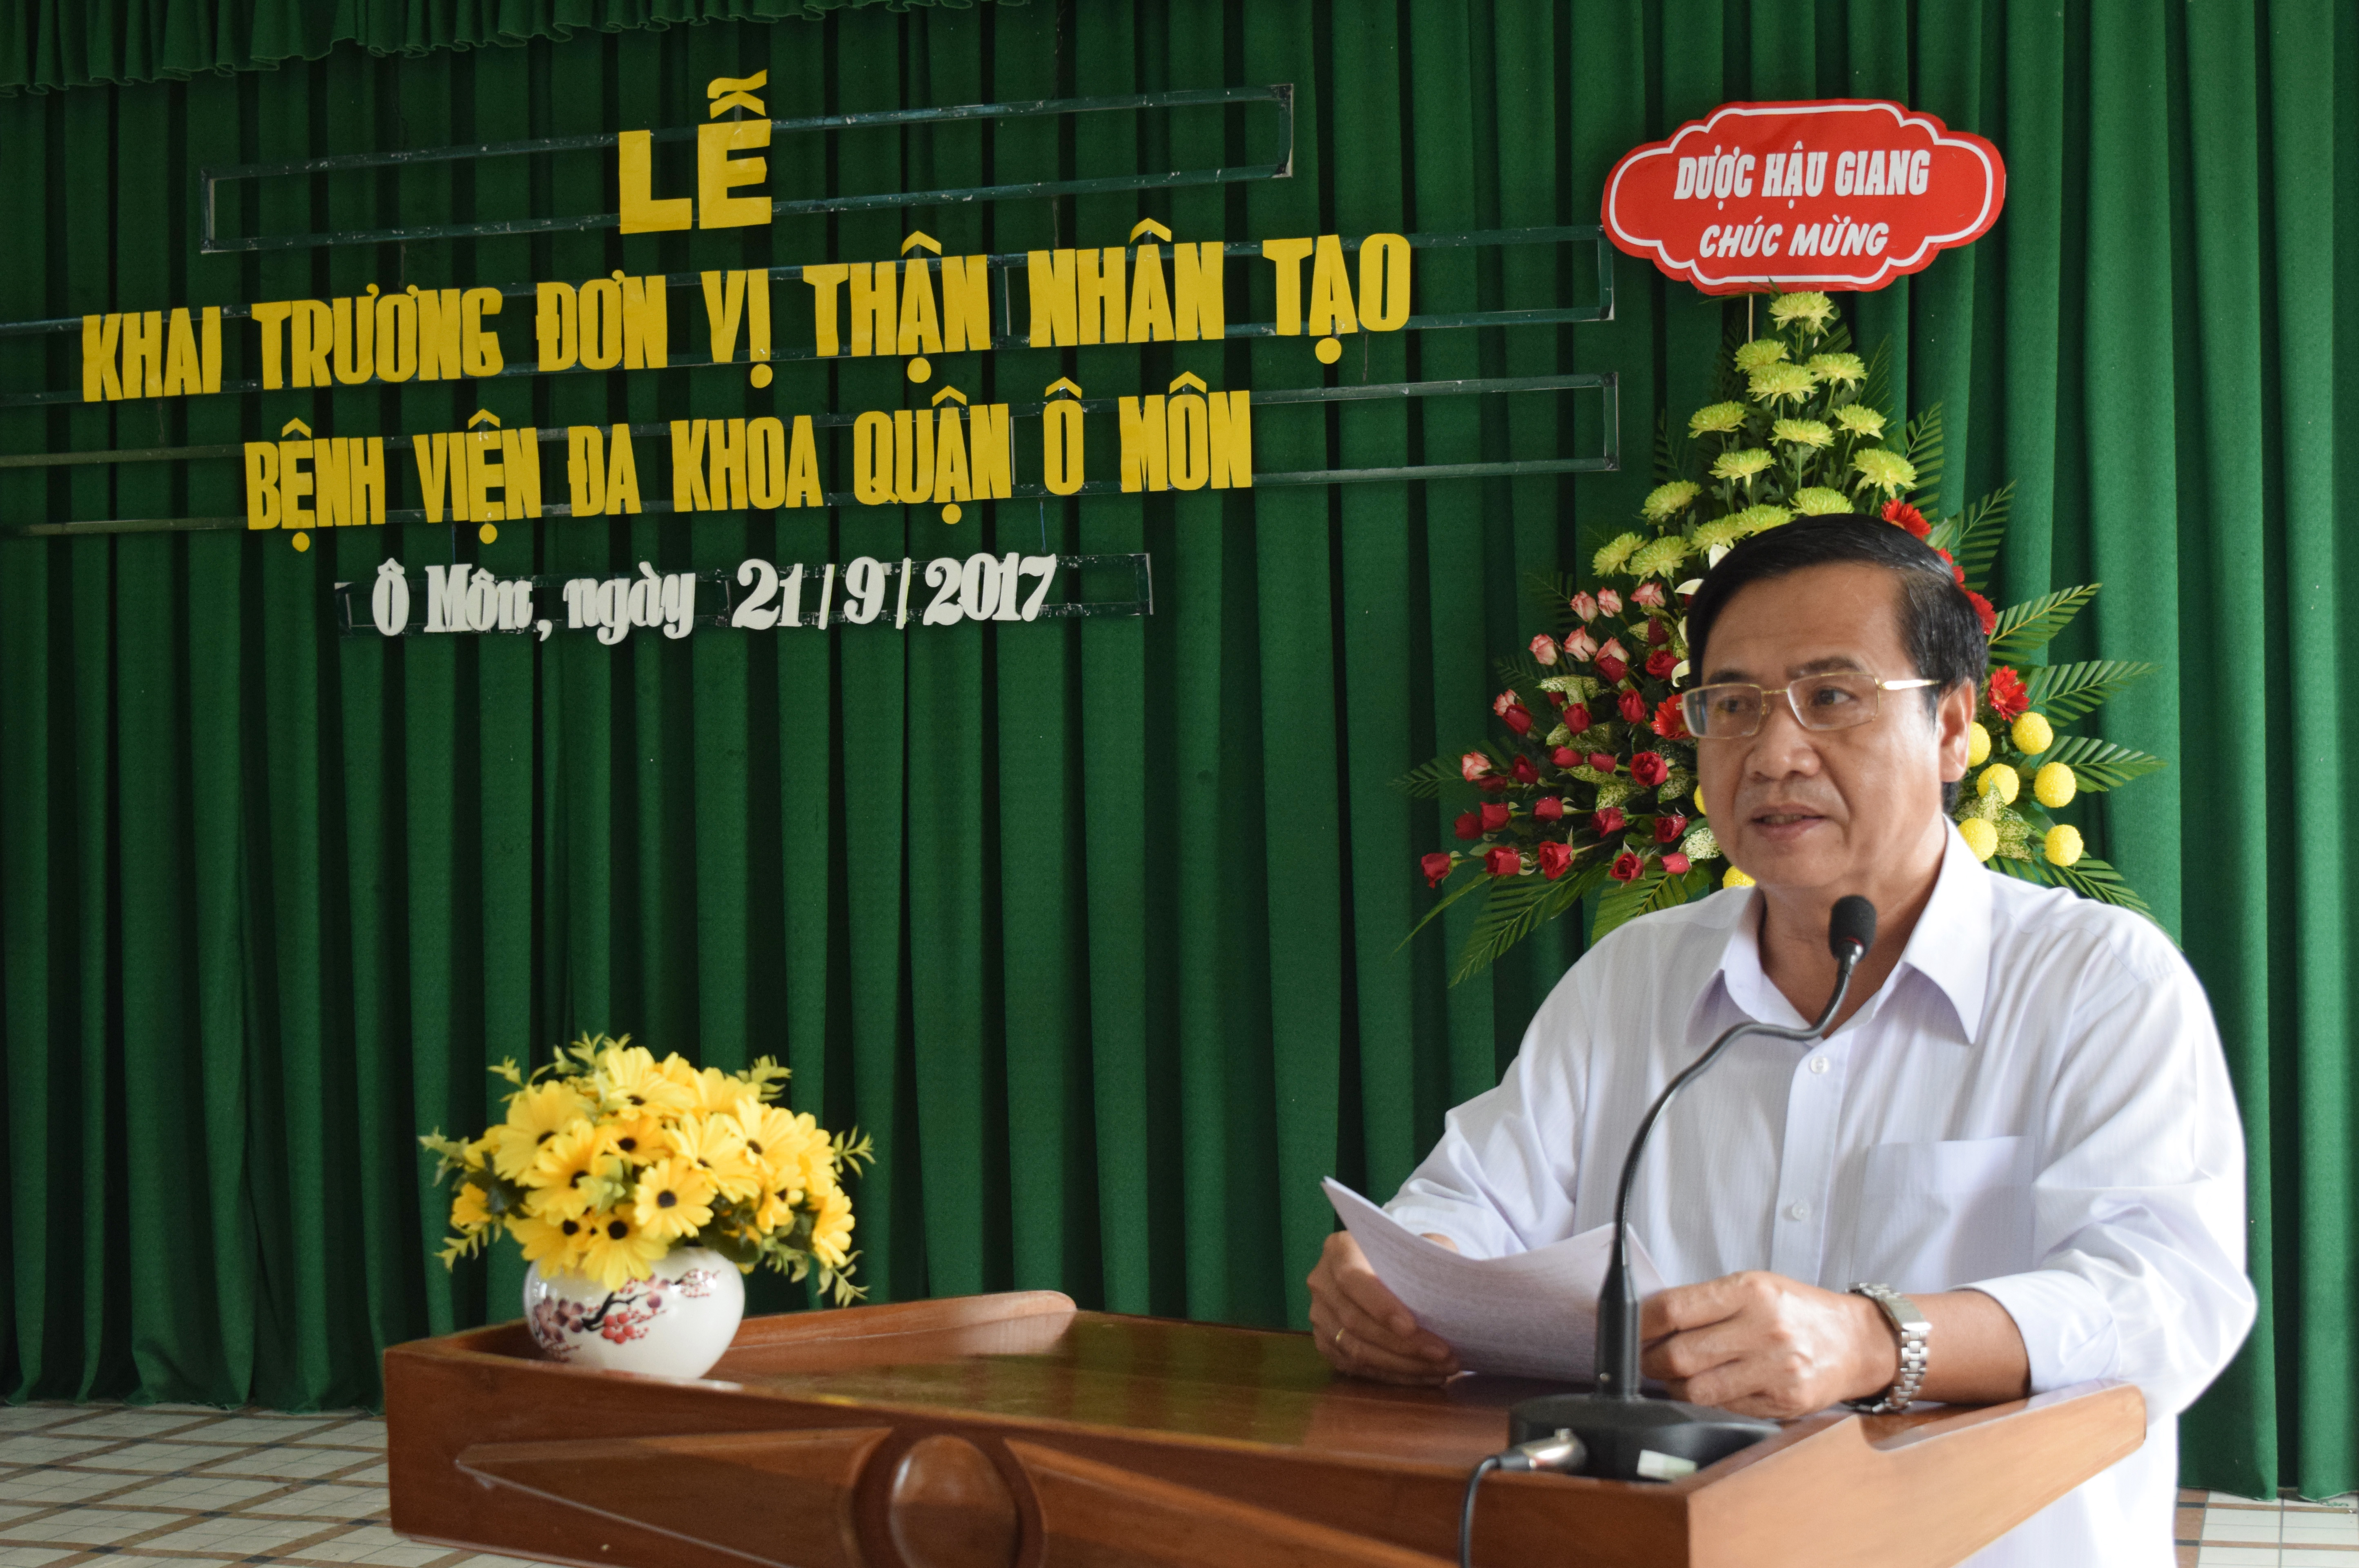 KHAI TRUONG DV THAN NHAN TAO - website_0004.jpg